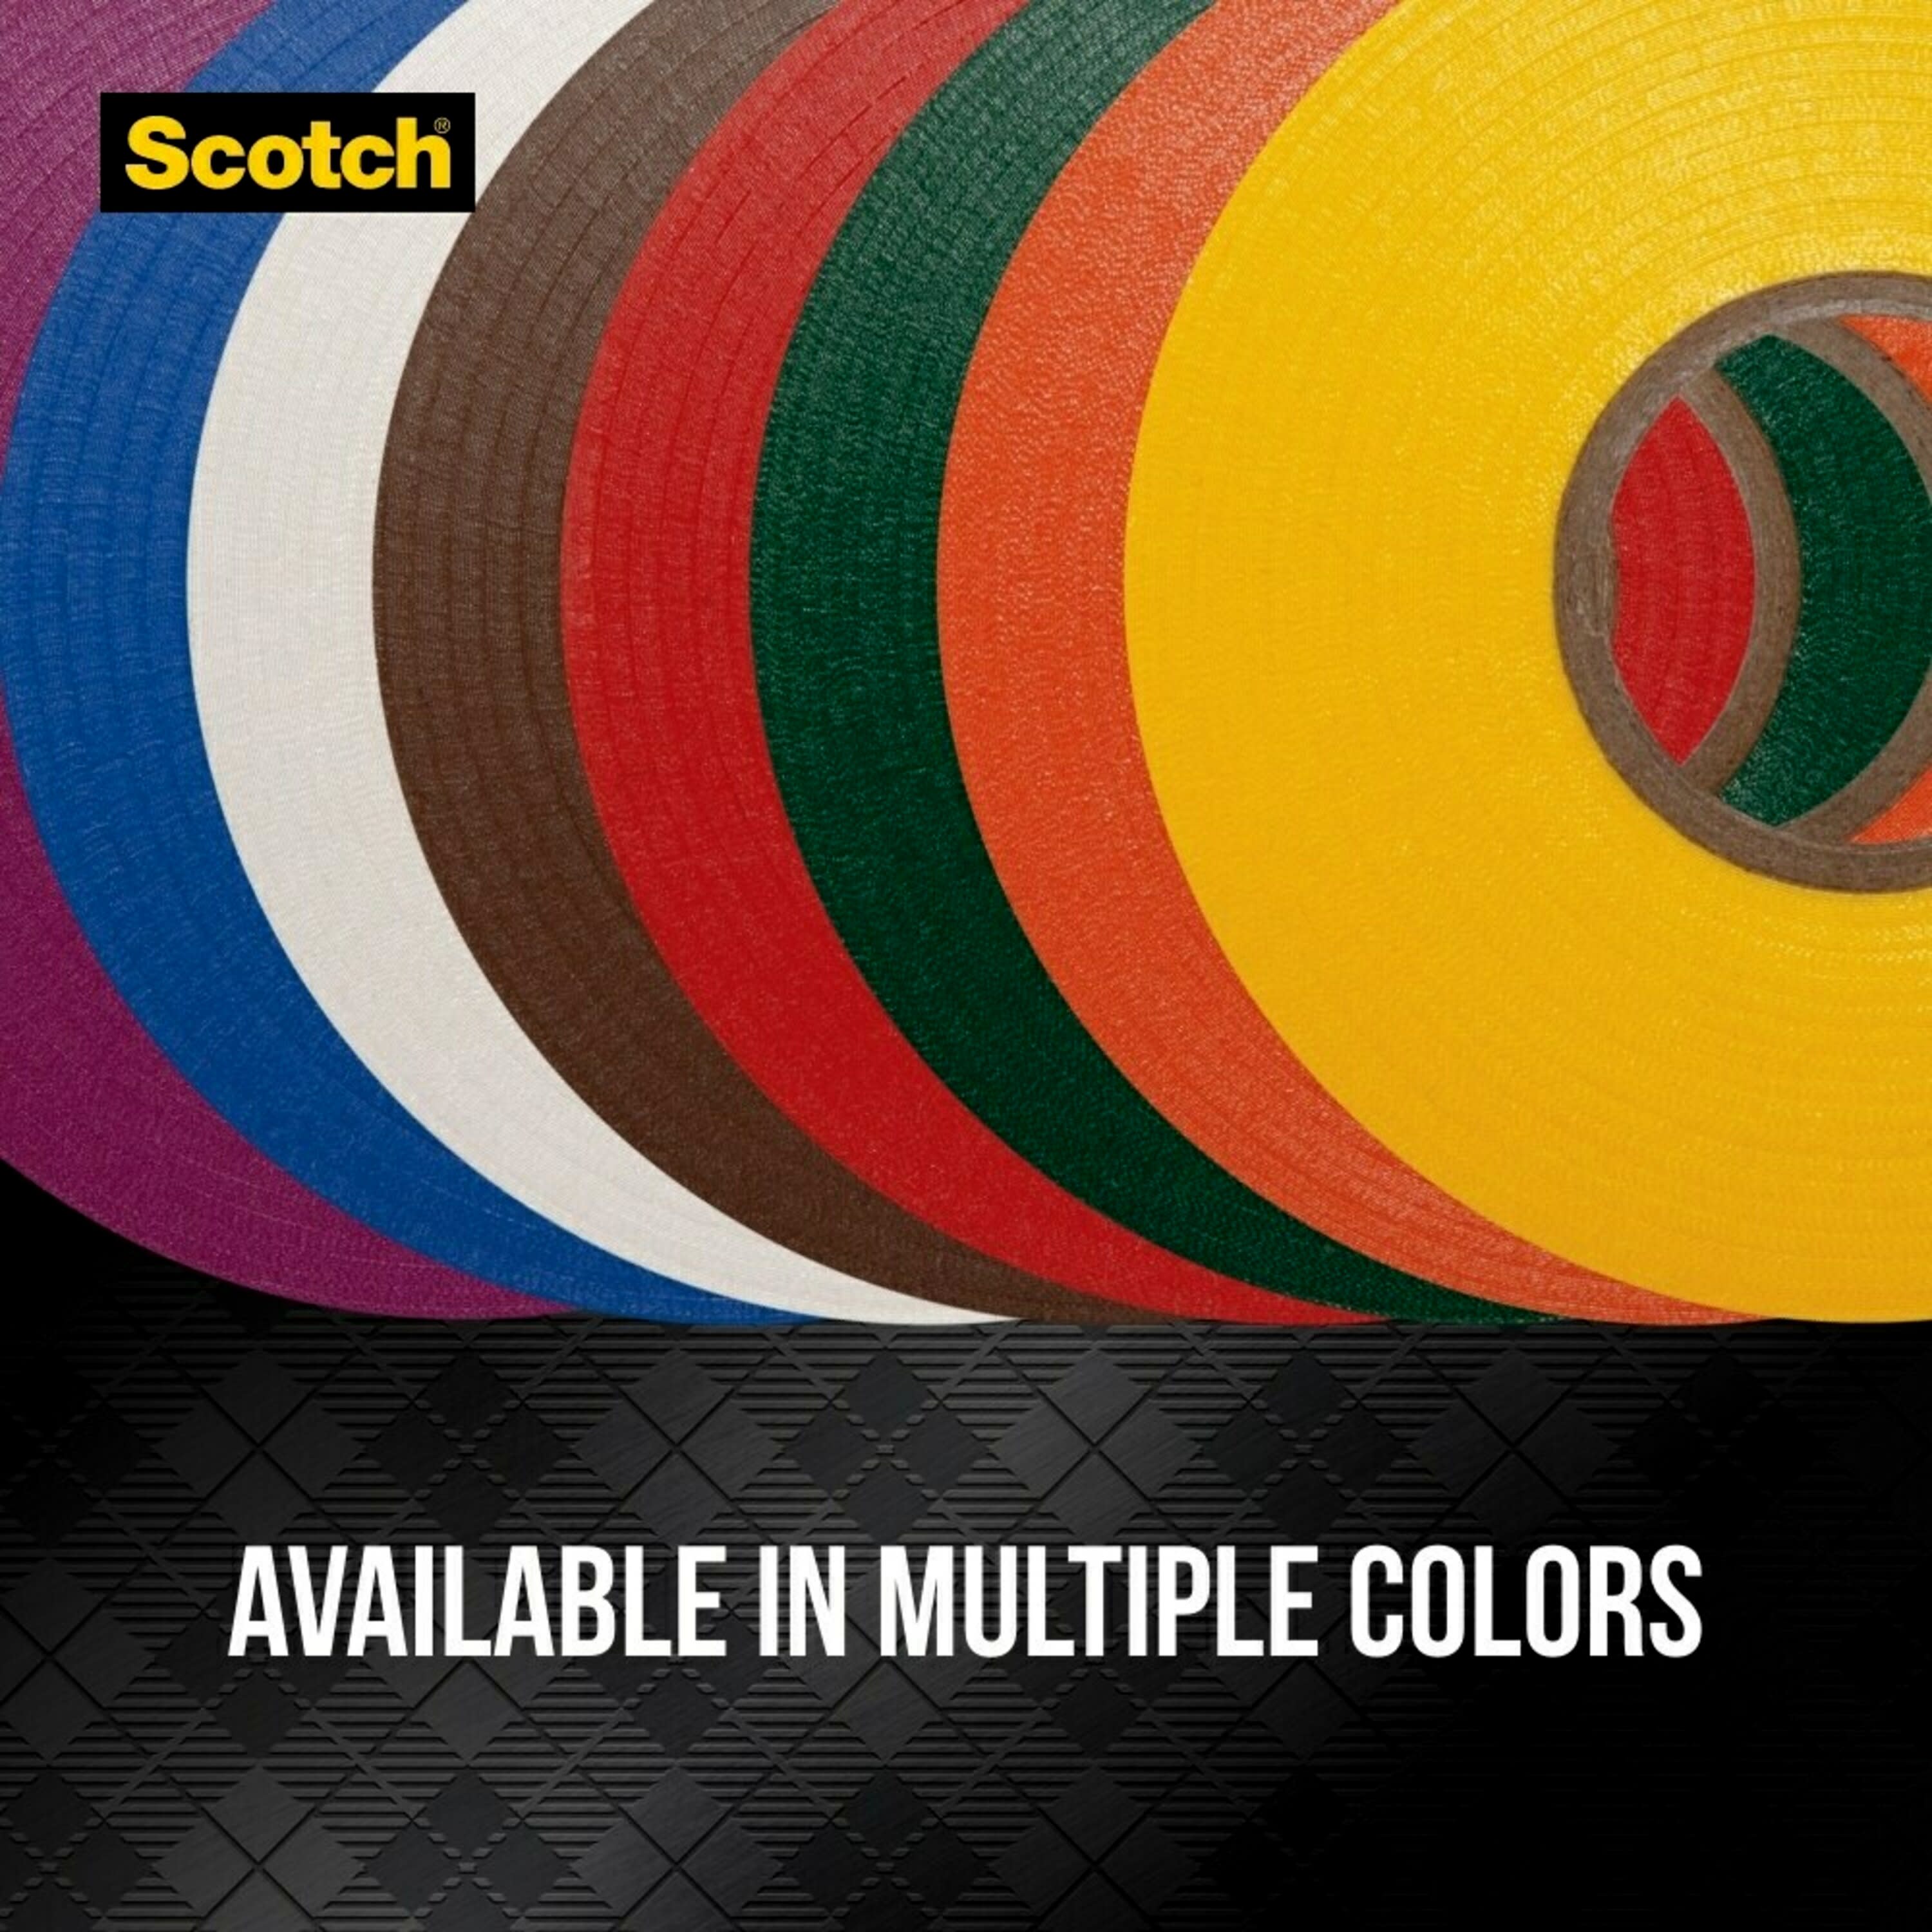 3M Scotch Vinyl Color Coding Electrical Tape 35, 1/2 x 20', Multi-Color, 8  Pack